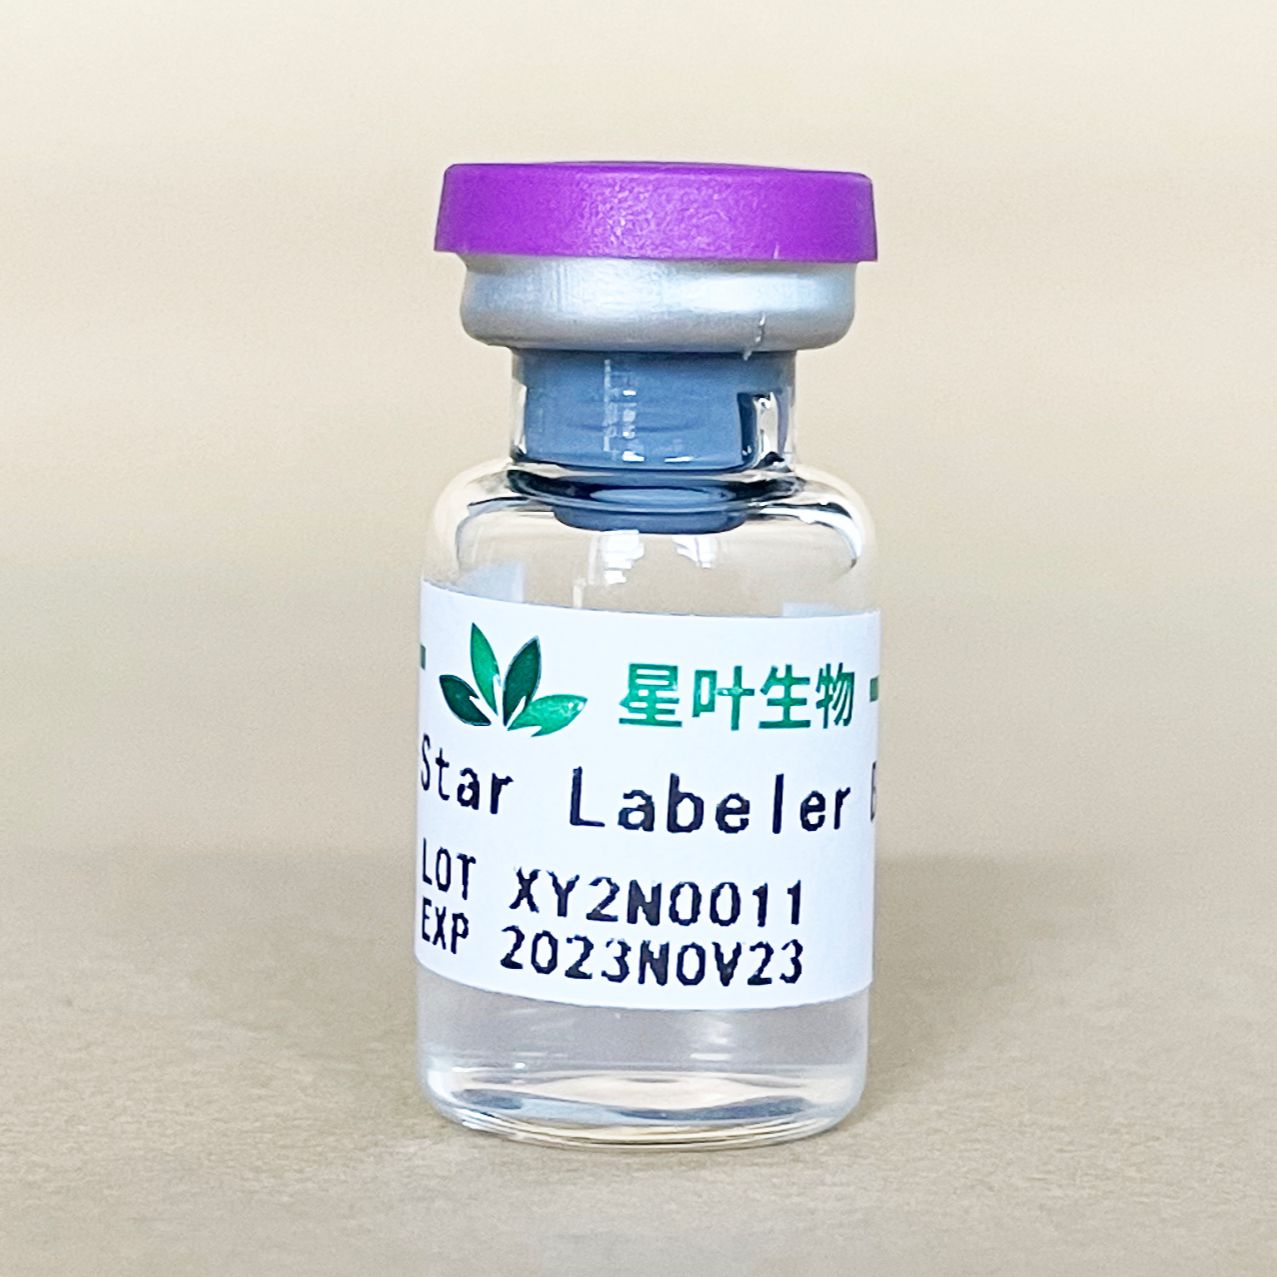 Labeler R 超声微泡造影剂